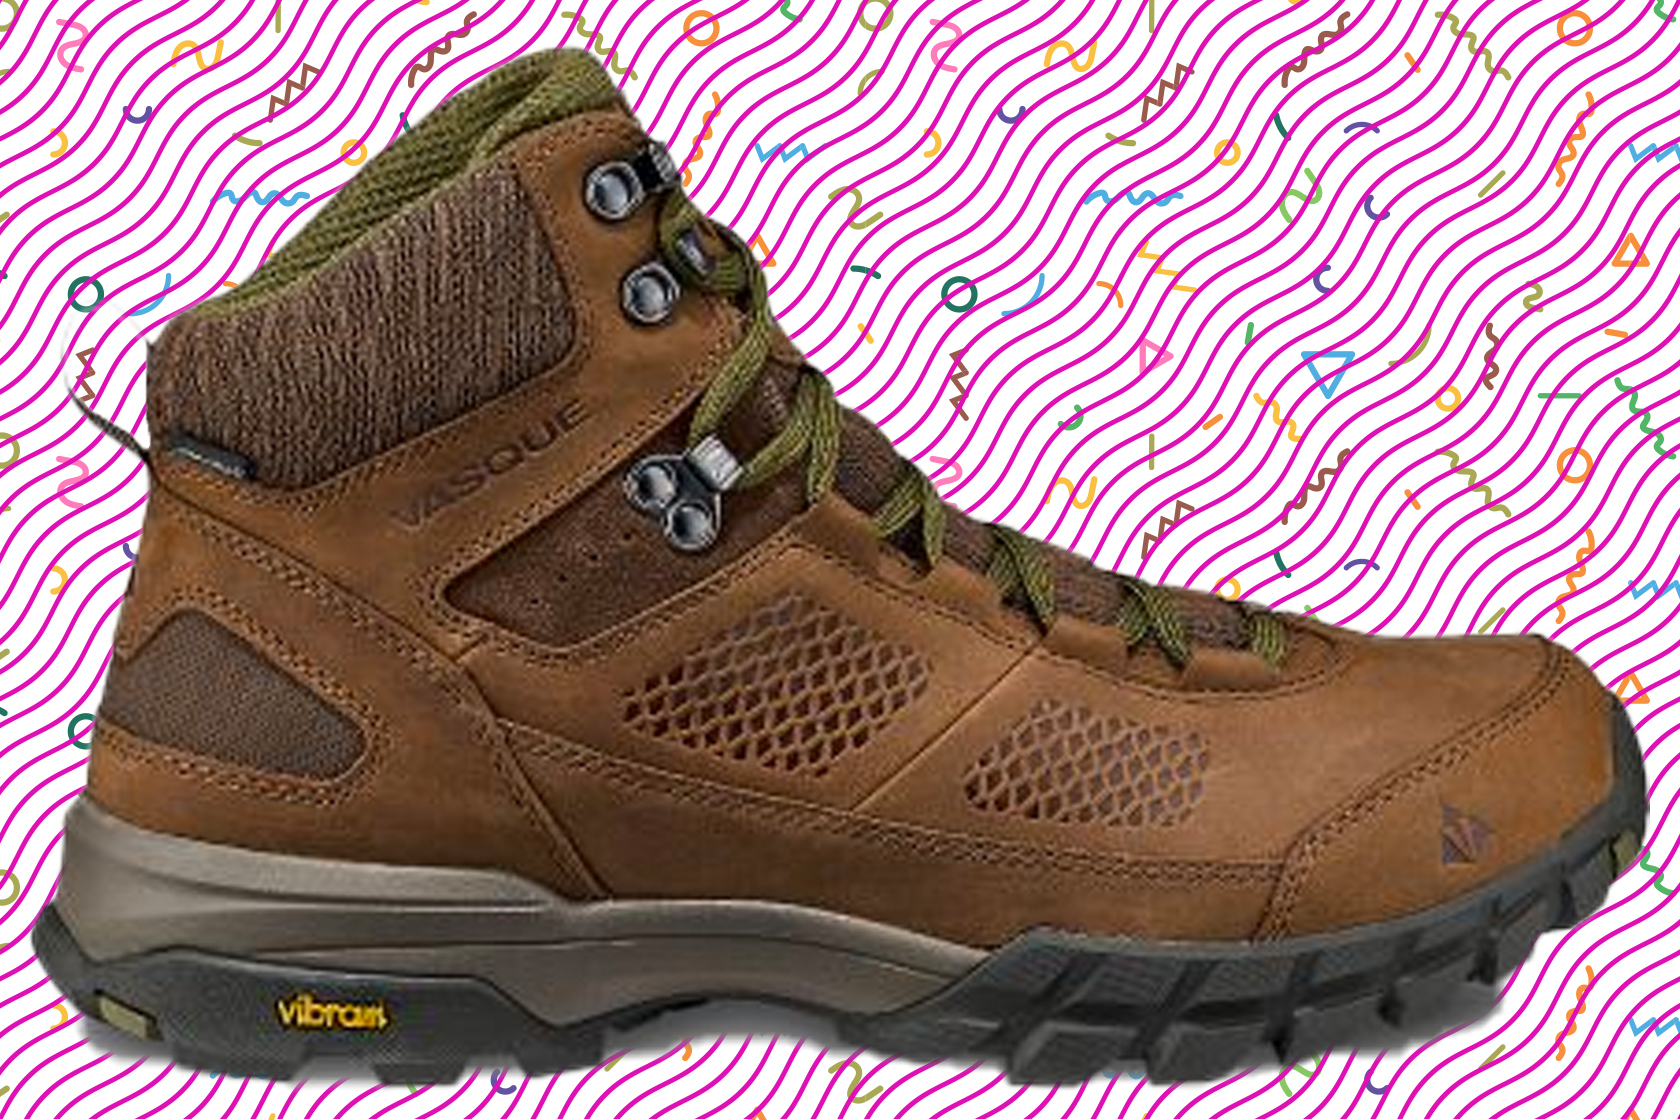 Best hiking boots under $150